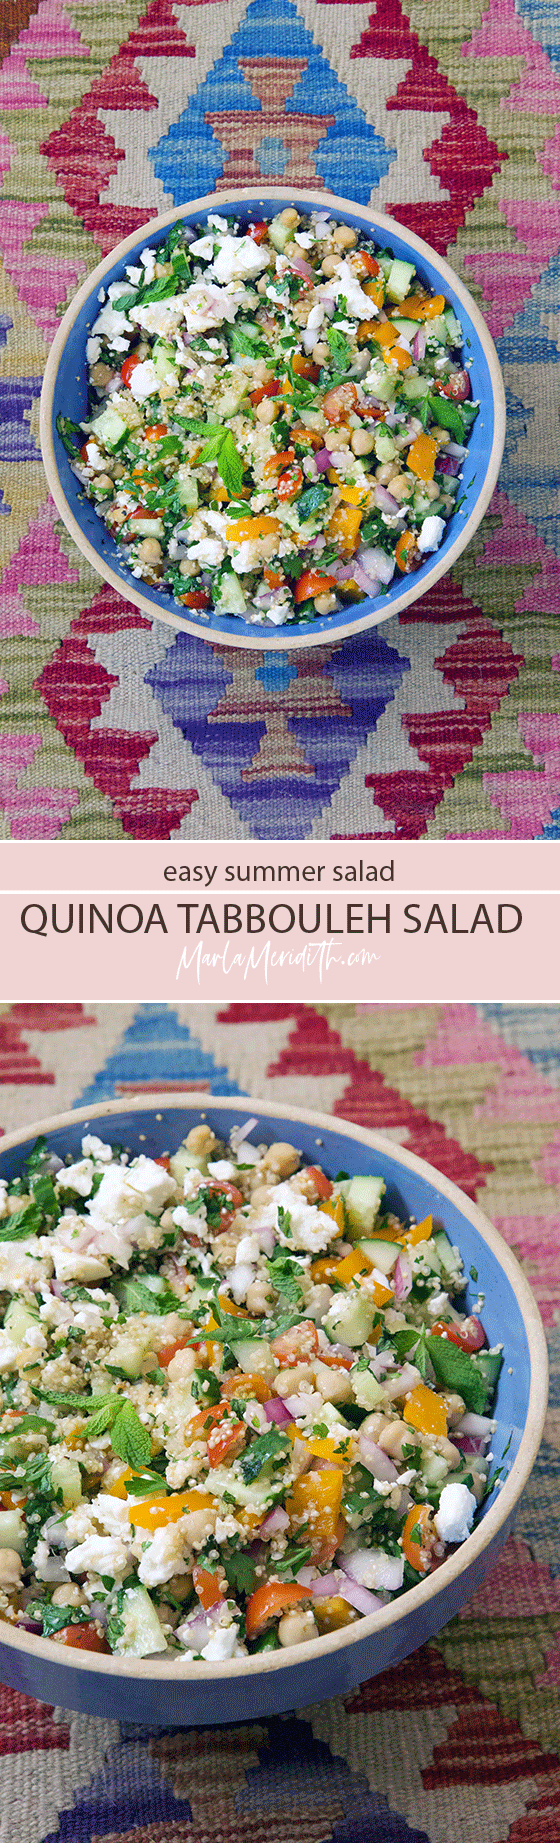 Quinoa Tabbouleh Salad recipe